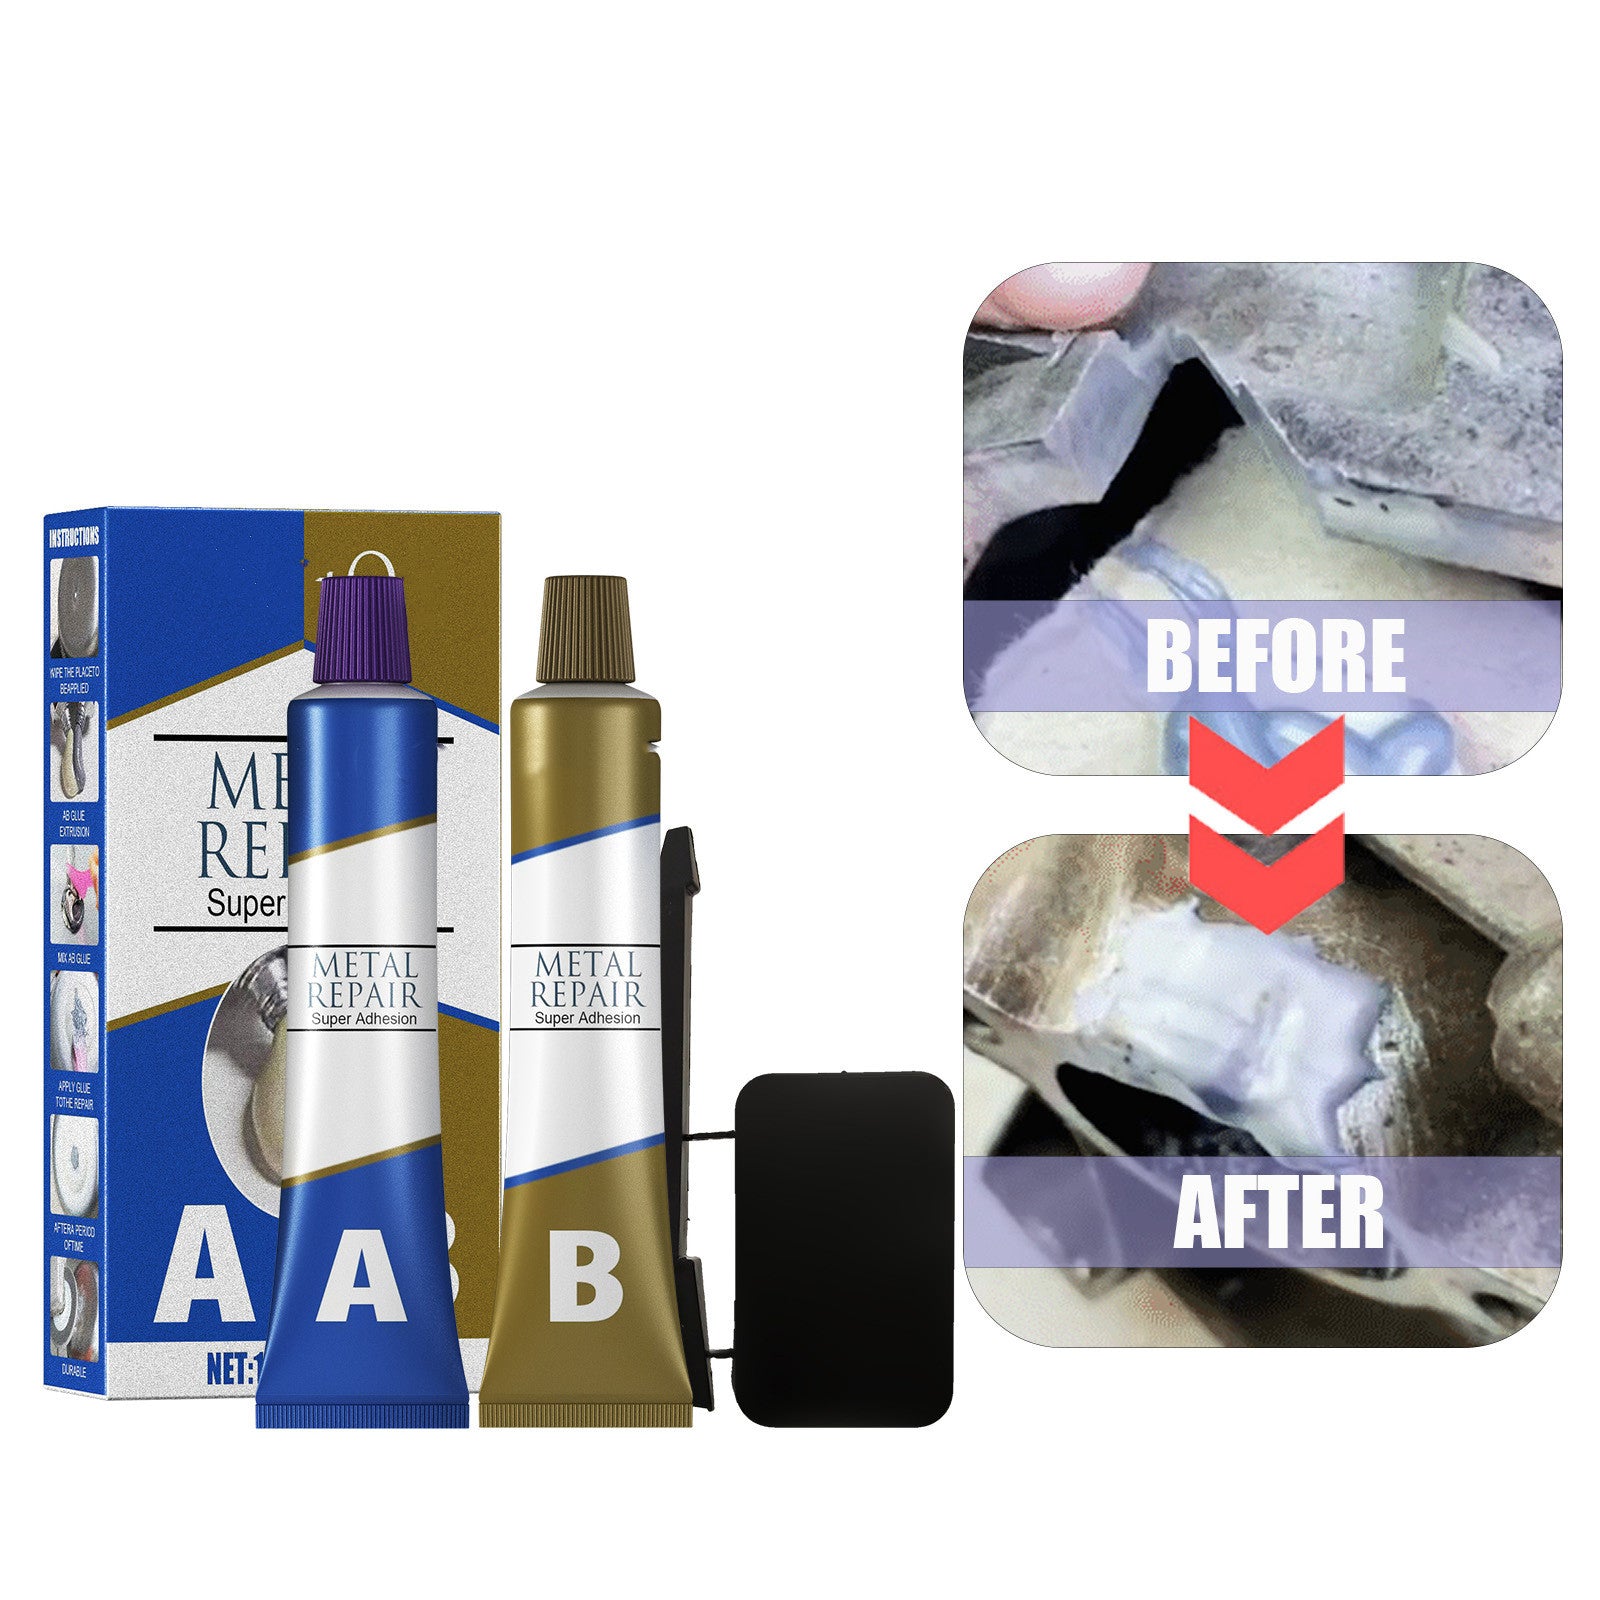 AB Metal Repair Glue